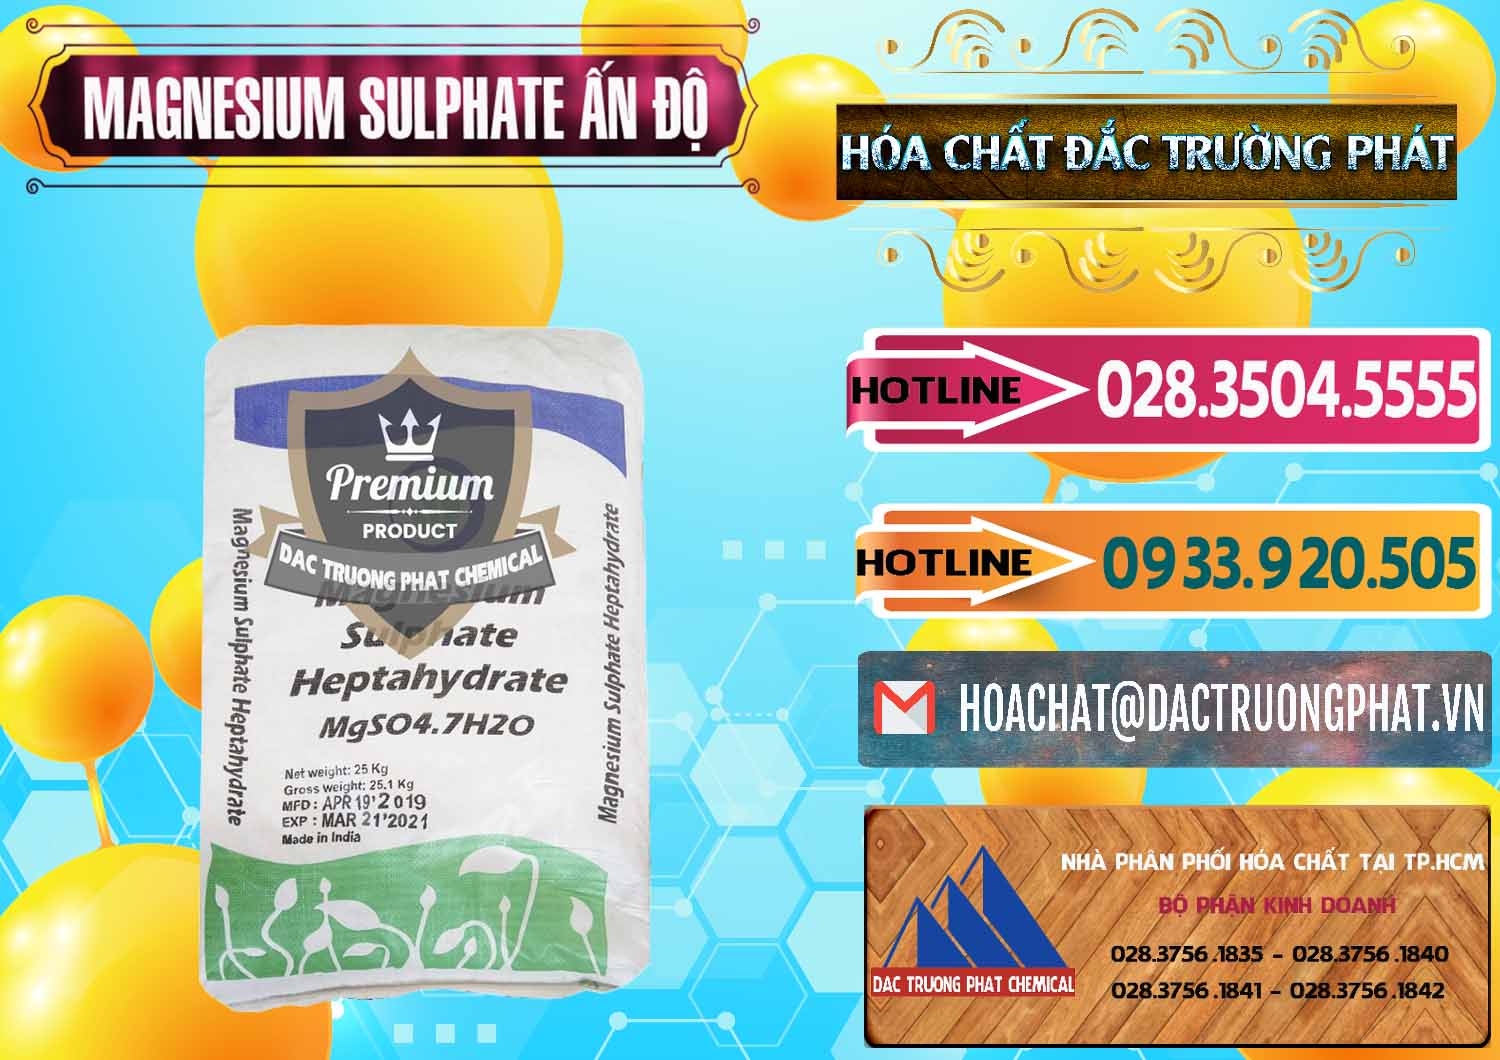 Cty chuyên bán ( cung cấp ) MGSO4.7H2O – Magnesium Sulphate Heptahydrate Ấn Độ India - 0362 - Cty phân phối và cung ứng hóa chất tại TP.HCM - dactruongphat.vn